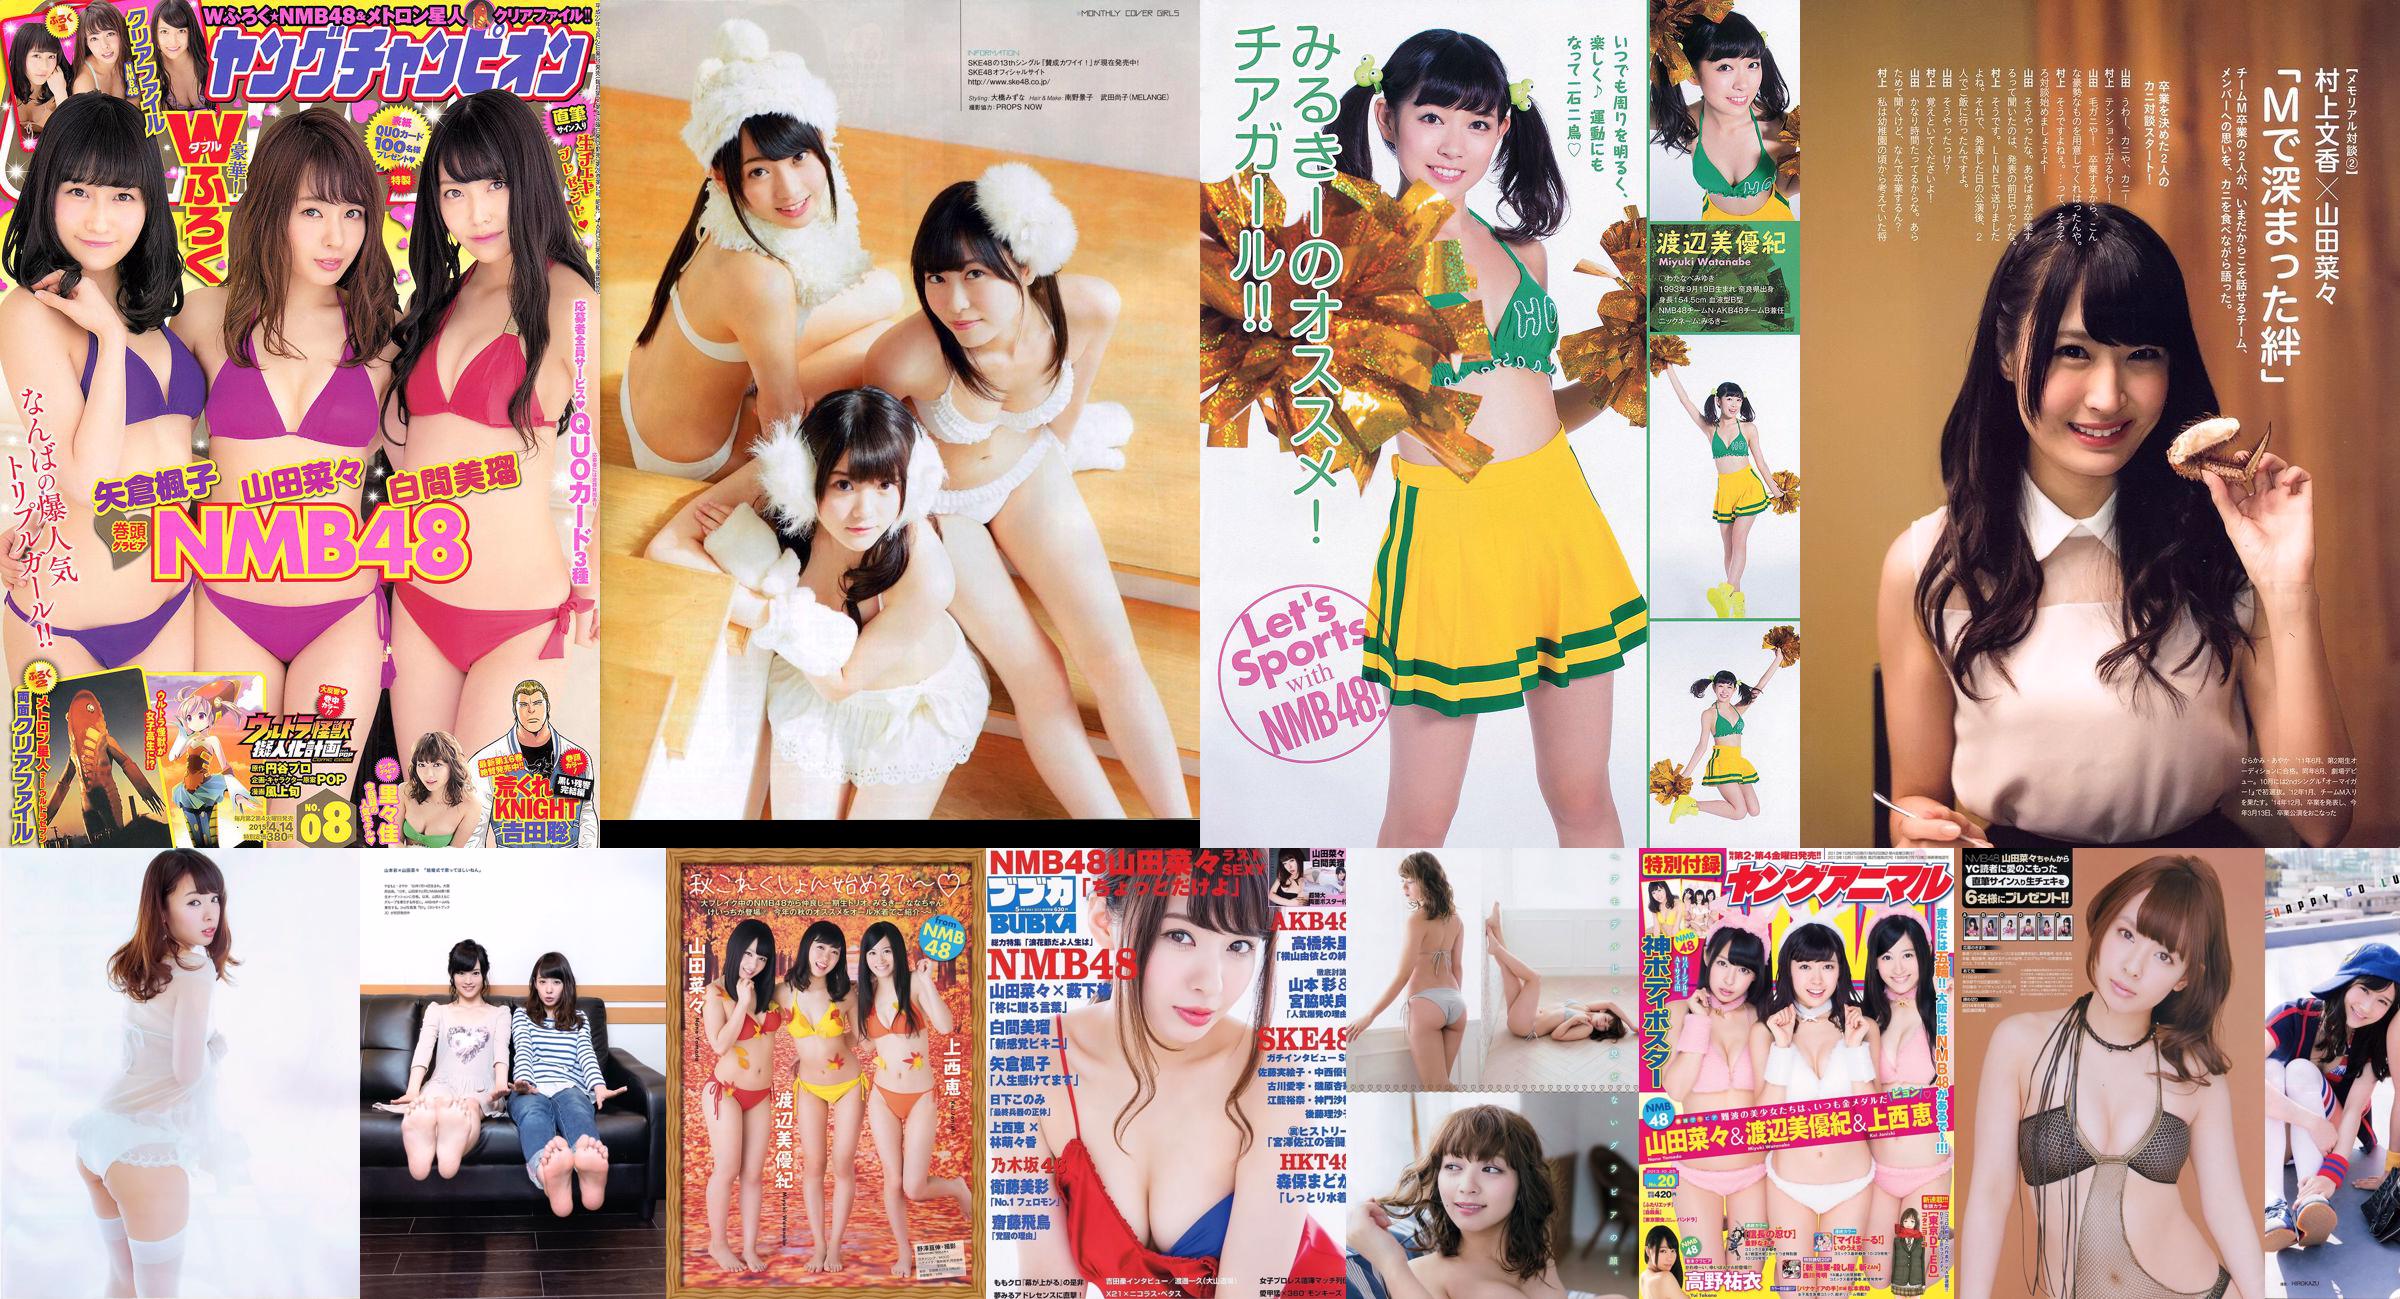 [BUBKA] Nana Yamada Miru Shiroma SKE48 Madoka Moriyasu Misa Eto 2015.05 Photographie No.85b744 Page 1